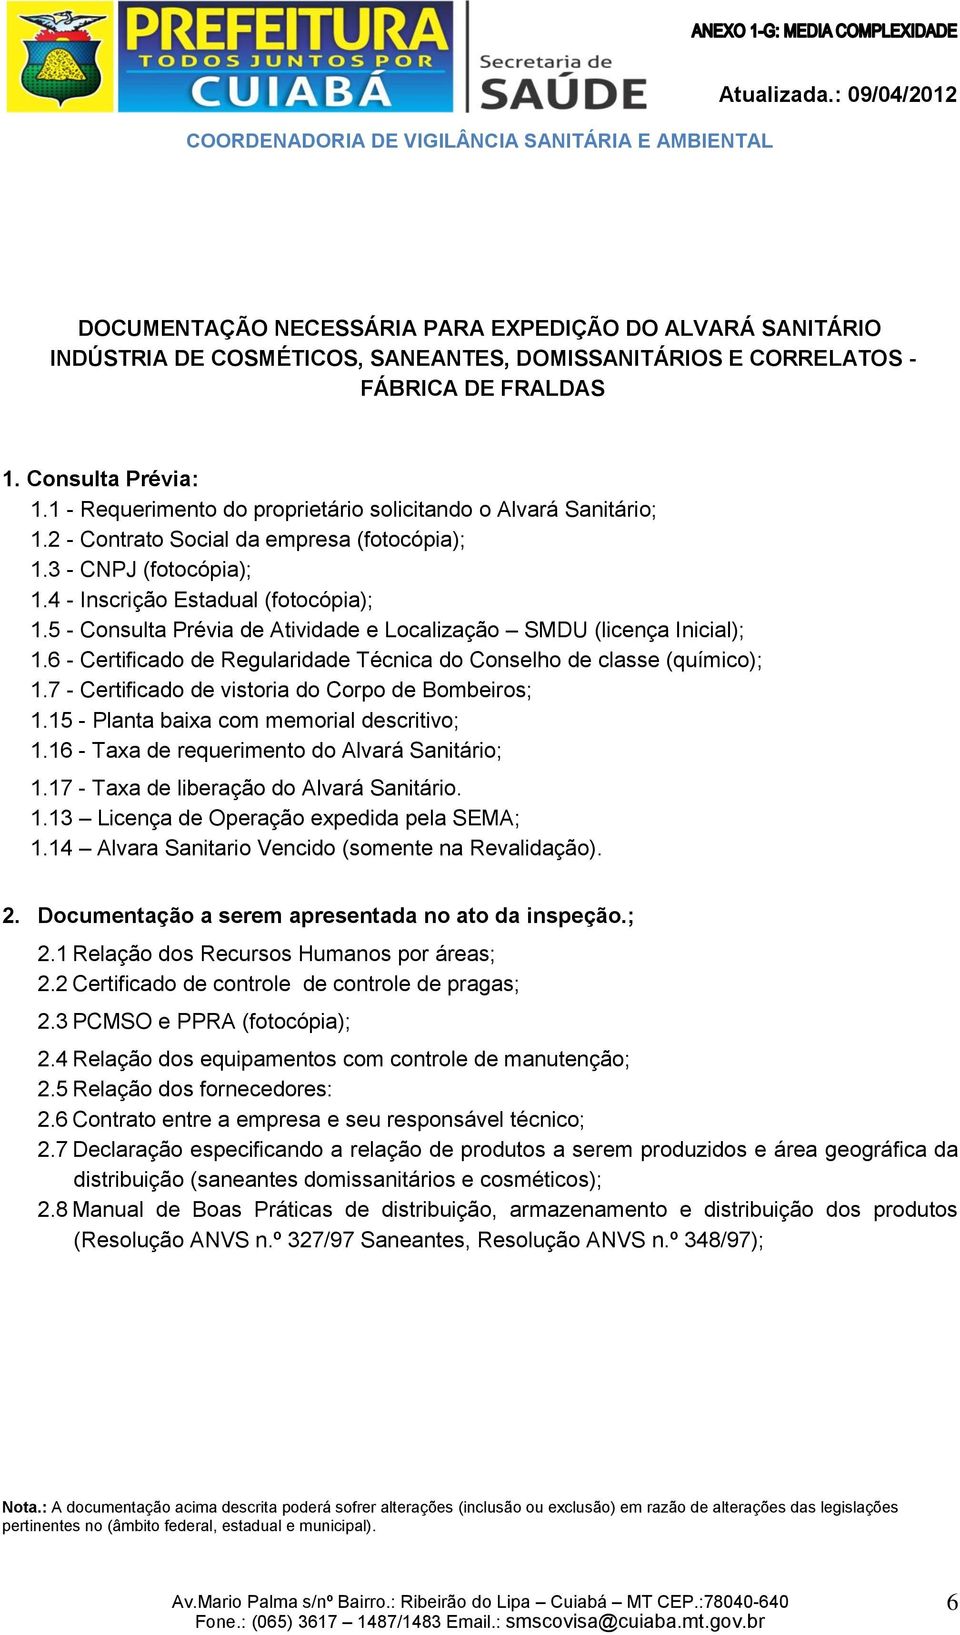 5 - Consulta Prévia de Atividade e Localização SMDU (licença Inicial); 1.6 - Certificado de Regularidade Técnica do Conselho de classe (químico); 1.